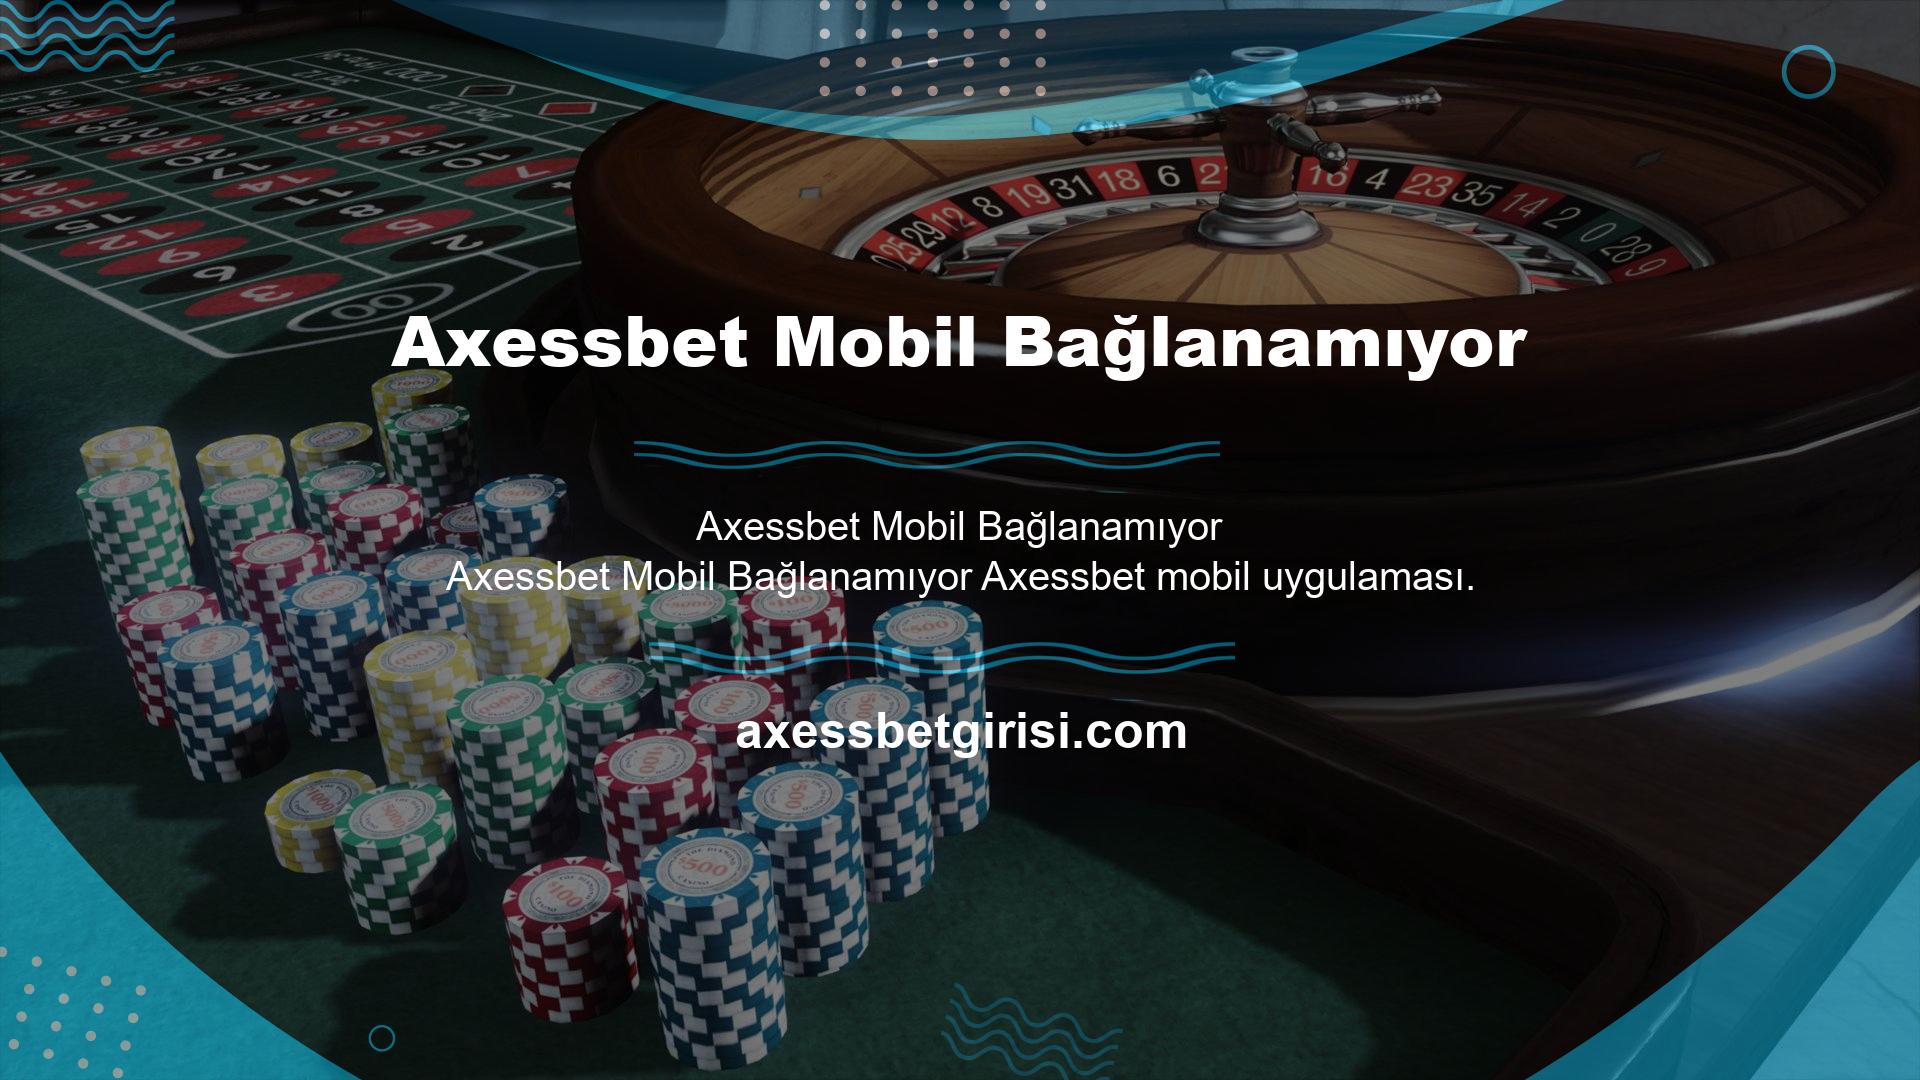 Türkiye'deki illegal oyun firmaları arasında bir Axessbet var ve Axessbet cep telefonuna bağlanamıyor